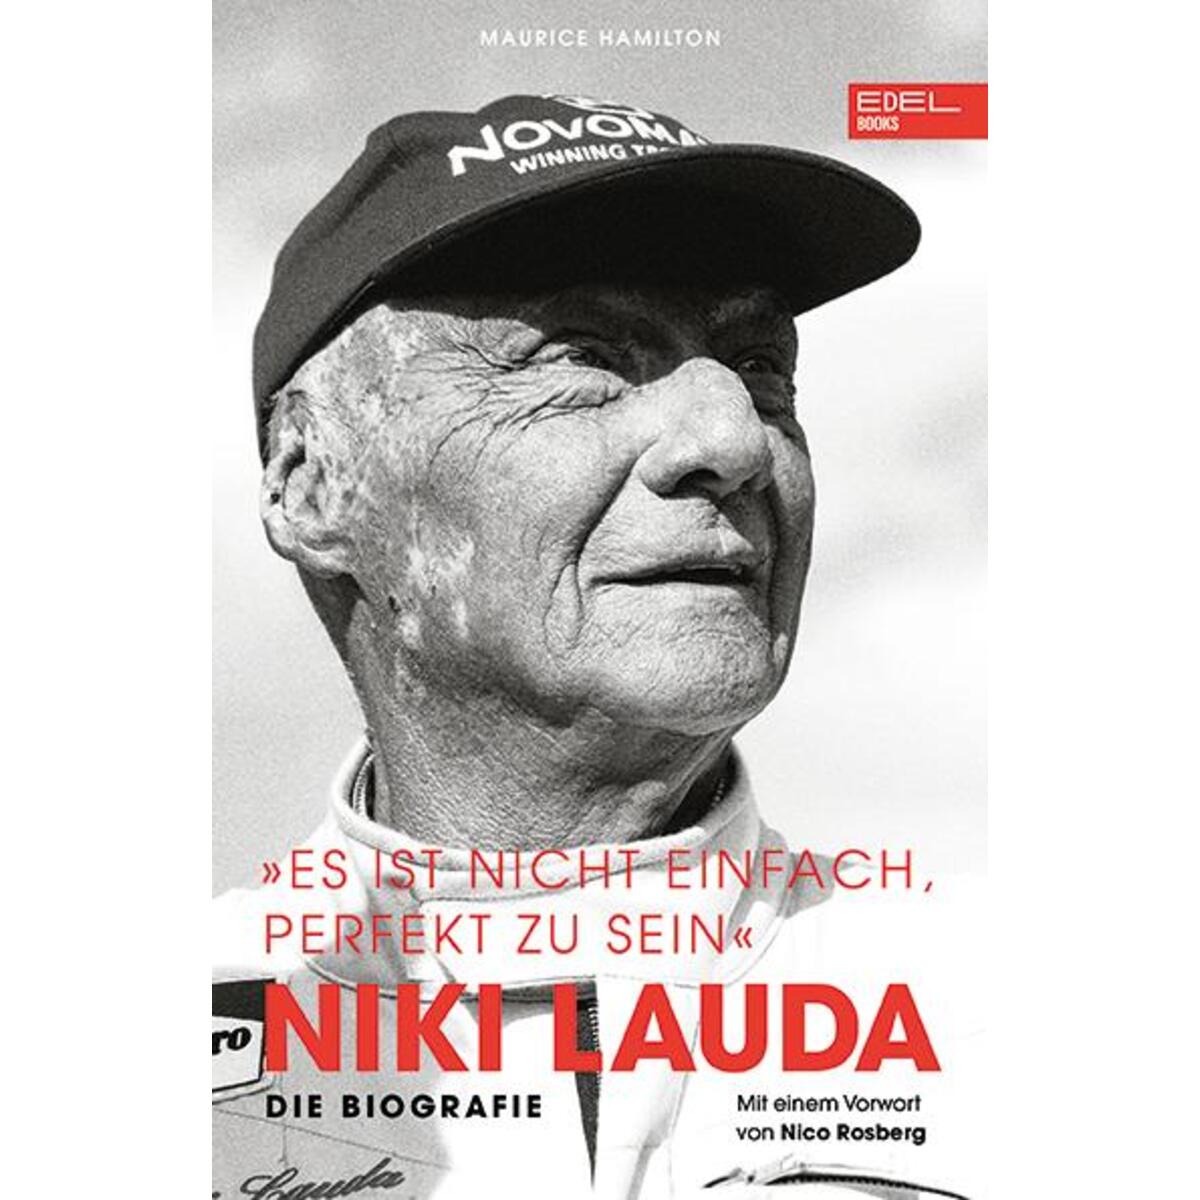 Niki Lauda "Es ist nicht einfach, perfekt zu sein" von EDEL Music & Entertainm.